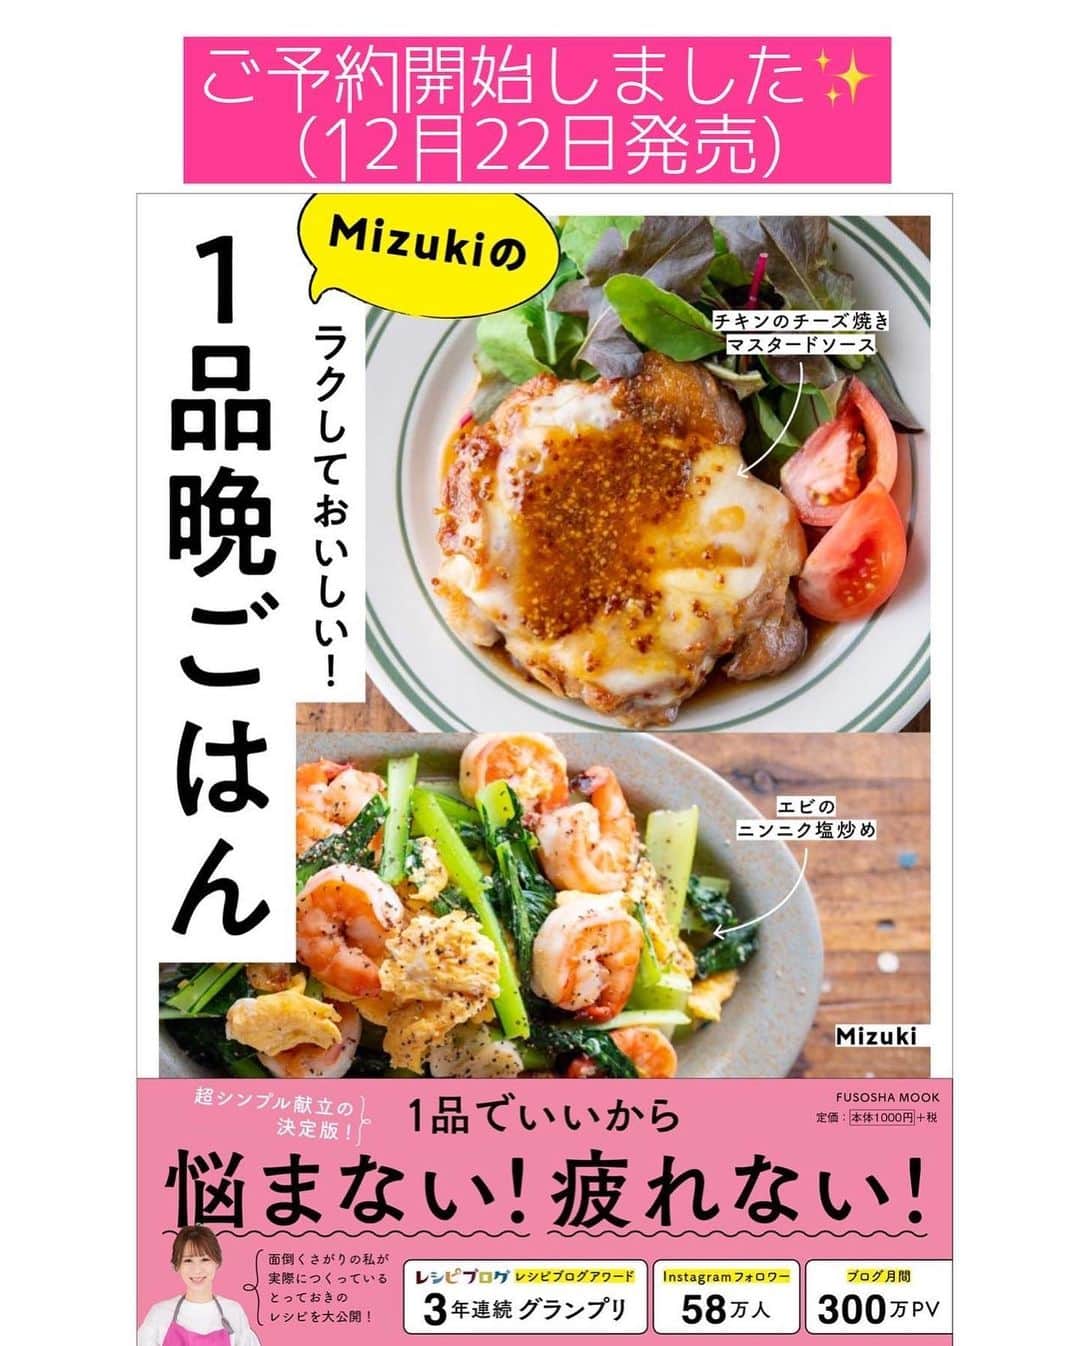 Mizuki【料理ブロガー・簡単レシピ】さんのインスタグラム写真 - (Mizuki【料理ブロガー・簡単レシピ】Instagram)「・﻿ 【#レシピ 】ーーーーーーーー﻿ ♡包まない！甘辛オムレツ♡﻿ ーーーーーーーーーーーーーー﻿ ﻿ ﻿ ﻿ おはようございます(*^^*)﻿ ﻿ 今日ご紹介させていただくのは﻿ \\包まない甘辛オムレツ// ﻿ ﻿ 甘辛く炒めた具を﻿ 卵でとじて形を整えるだけ！﻿ の、超簡単レシピです♡﻿ ひとつずつ包むより格段に手軽で﻿ 多少形が崩れても問題なし(*´艸`)﻿ フライパンひとつで﻿ あっという間に作れますよ〜♩﻿ ﻿ 甘辛味にケチャップが合うので﻿ よかったらお試し下さいね(*^^*)﻿ ﻿ ﻿ ﻿ ＿＿＿＿＿＿＿＿＿＿＿＿＿＿＿＿＿＿＿＿﻿ 【2人分】﻿ 豚ひき肉...150g﻿ 玉ねぎ...1/2個﻿ ピーマン...2個﻿ 卵...3個﻿ サラダ油...小2﻿ ●砂糖・醤油...各大1﻿ ●塩こしょう...少々﻿ ケチャップ...適量﻿ ﻿ 1.玉ねぎとピーマンは粗みじん切りにする。卵は溶きほぐす。﻿ 2.フライパンにサラダ油を中火で熱し、ひき肉、玉ねぎ、ピーマンを炒め、火が通ったら●を加えて煮からめる。﻿ 3.強火にし、溶き卵を流し入れて大きく混ぜ、半熟になったら端に寄せて形を整える。﻿ 4.ひっくり返して器に盛り、ケチャップをかける。﻿ ￣￣￣￣￣￣￣￣￣￣￣￣￣￣￣￣￣￣￣￣﻿ ﻿ ﻿ ﻿ 《ポイント》﻿ ♦︎合挽き肉、鶏ひき肉で作っても♩﻿ ♦︎卵にしっかり火を通したい場合は、形を整えてから蓋をして弱火で蒸し焼きにしても♩﻿ ♦︎私は24cmのフライパンを使用しています♩﻿ ﻿ ﻿ ﻿ ﻿ ﻿ ﻿ ﻿ ﻿ ﻿ 📕新刊予約開始しました📕﻿ 【ラクしておいしい！#1品晩ごはん 】﻿ ￣￣￣￣￣￣￣￣￣￣￣￣￣￣￣￣￣﻿ 私たちだってヘトヘトな日がある•••﻿ 毎日何品も作っていられない•••﻿ もうごはんに悩みたくない😢﻿ そう思うことってありませんか？﻿ そんな時、1品ごはんはいかがでしょう？﻿ というご提案です✨﻿ ﻿ ﻿ 【1品ごはん】は﻿ 副菜いらずで全てがシンプル！﻿ ￣￣￣￣￣￣￣￣￣￣￣￣￣￣￣￣￣￣﻿ 一品つくるだけでいいから﻿ 献立を考えなくてよし！﻿ ￣￣￣￣￣￣￣￣￣￣￣￣￣￣￣￣￣￣﻿ 悩まない、疲れない、﻿ 気力や時間がなくてもなんとかなる！﻿ ￣￣￣￣￣￣￣￣￣￣￣￣￣￣￣￣￣￣﻿ そんな頼りになる﻿ 便利なお助けごはんです☺️💕﻿ (ハイライトに🔗貼っています✨)﻿ ￣￣￣￣￣￣￣￣￣￣￣￣￣￣￣￣￣﻿ ﻿ ﻿ ﻿ ﻿ ﻿ ⭐️発売中⭐️﻿ ＿＿＿＿＿＿＿＿＿＿＿＿＿＿＿＿＿＿﻿ しんどくない献立、考えました♩﻿ \15分でいただきます/﻿ 📕#Mizukiの2品献立 📕﻿ ﻿ 和食をもっとカジュアルに♩﻿ \毎日のごはんがラクになる/﻿ 📘#Mizukiの今どき和食 📘﻿ ﻿ ホケミレシピの決定版♩﻿ \はじめてでも失敗しない/﻿ 📙#ホットケーキミックスのお菓子 📙﻿ ﻿ NHKまる得マガジンテキスト☆﻿ ホットケーキミックスで﻿ 📗絶品おやつ&意外なランチ📗﻿ ￣￣￣￣￣￣￣￣￣￣￣￣￣￣￣￣￣￣﻿ ﻿ ﻿ ﻿ ＿＿＿＿＿＿＿＿＿＿＿＿＿＿＿＿＿＿﻿ レシピを作って下さった際や﻿ レシピ本についてのご投稿には﻿ タグ付け( @mizuki_31cafe )して﻿ お知らせいただけると嬉しいです😊💕﻿ ￣￣￣￣￣￣￣￣￣￣￣￣￣￣￣￣￣￣﻿ ﻿ ﻿ ﻿ ﻿ #オムレツ#包まない#ひき肉# #Mizuki#簡単レシピ#時短レシピ#節約レシピ#料理#フーディーテーブル#マカロニメイト#おうちごはん#デリスタグラマー#料理好きな人と繋がりたい#食べ物#料理記録#おうちごはんlover#写真好きな人と繋がりたい#foodpic#cooking#recipe#lin_stagrammer#foodporn#yummy#甘辛オムレツm」12月11日 7時02分 - mizuki_31cafe